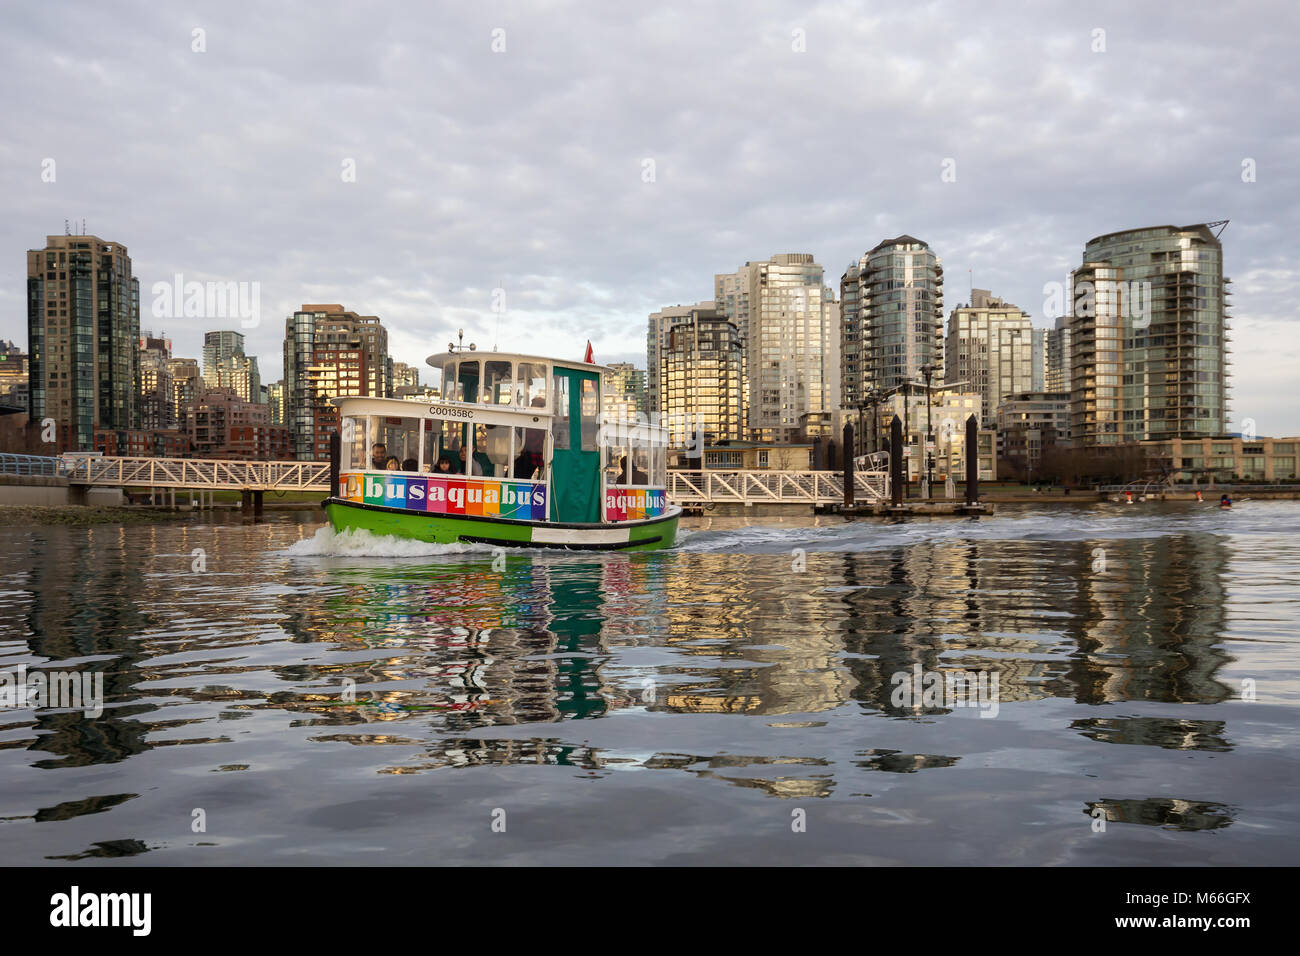 El centro de Vancouver, British Columbia, Canadá - 28 de enero de 2017 - Un pequeño taxi barco monta en False Creek durante un vibrante atardecer de invierno. Foto de stock